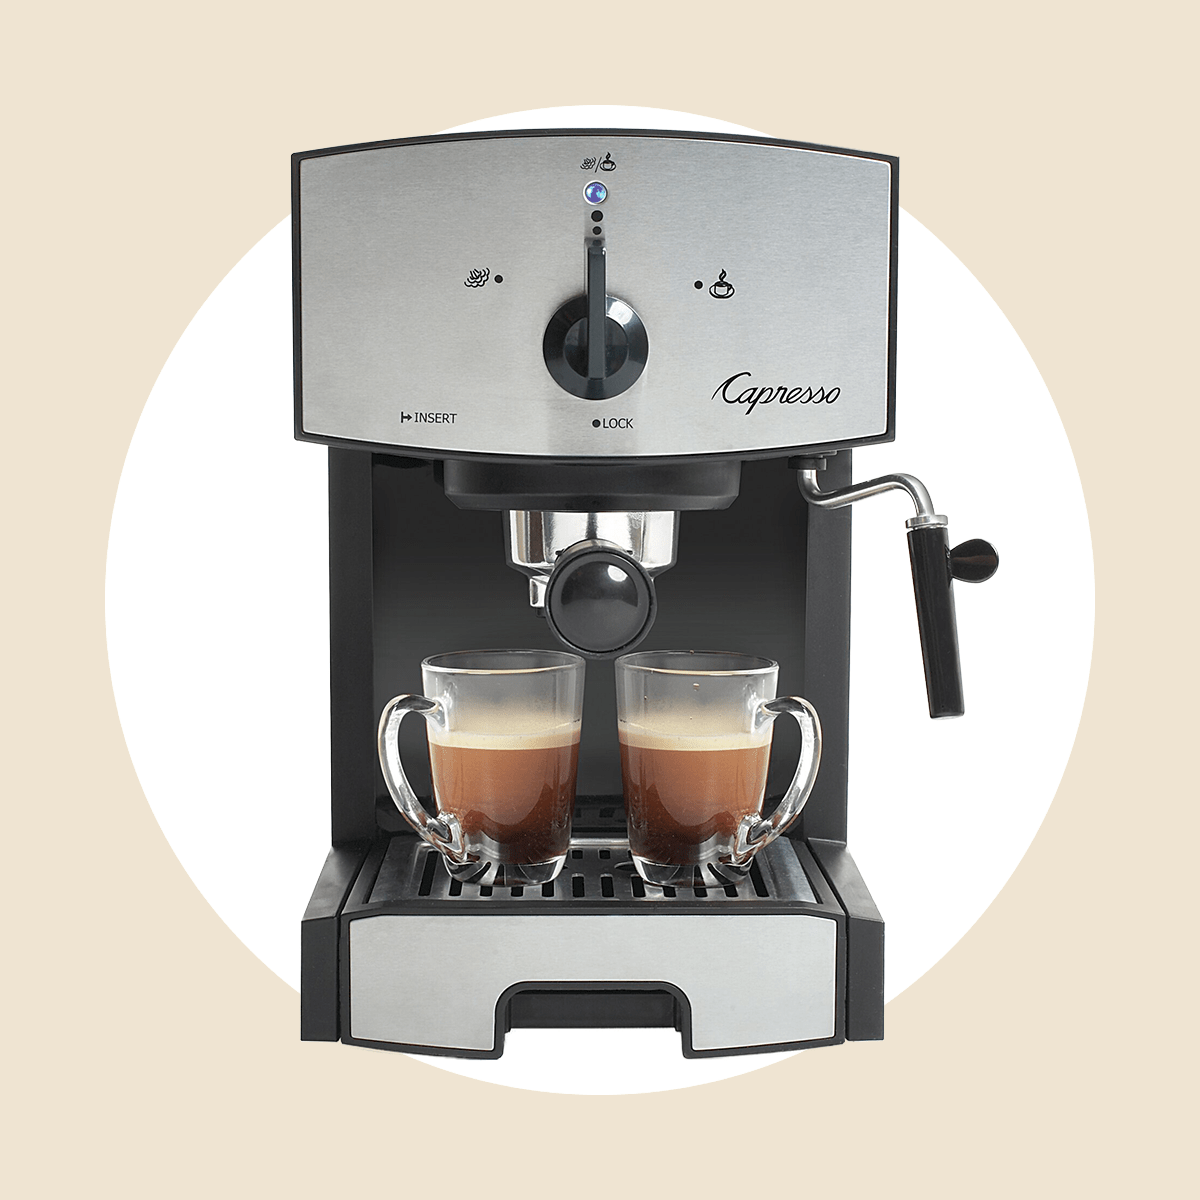 Capresso Ec50 Espresso咖啡机Ecomm Via Wayfair